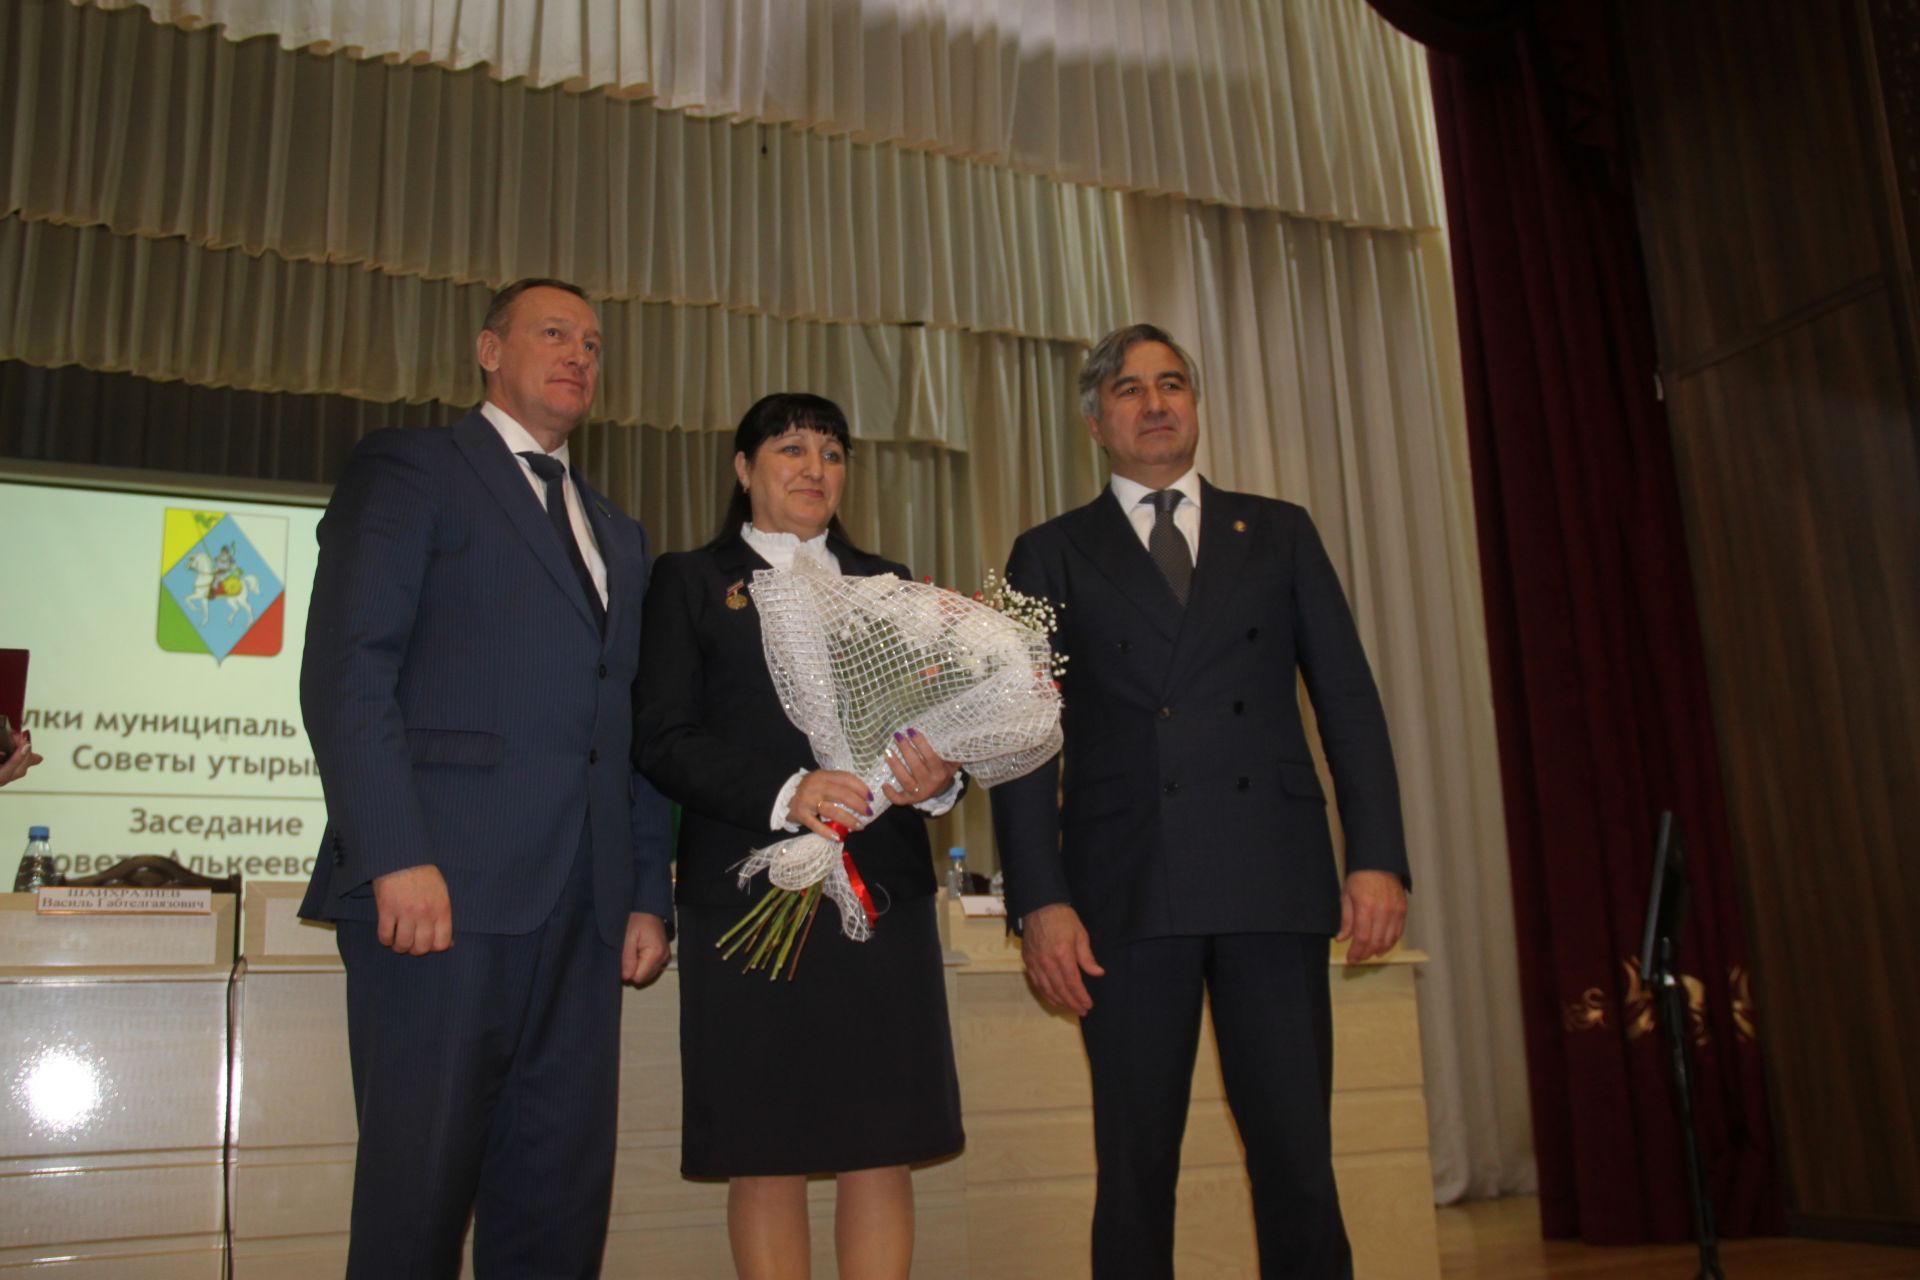 Отчетная сессия главы Алькеевского муниципального района